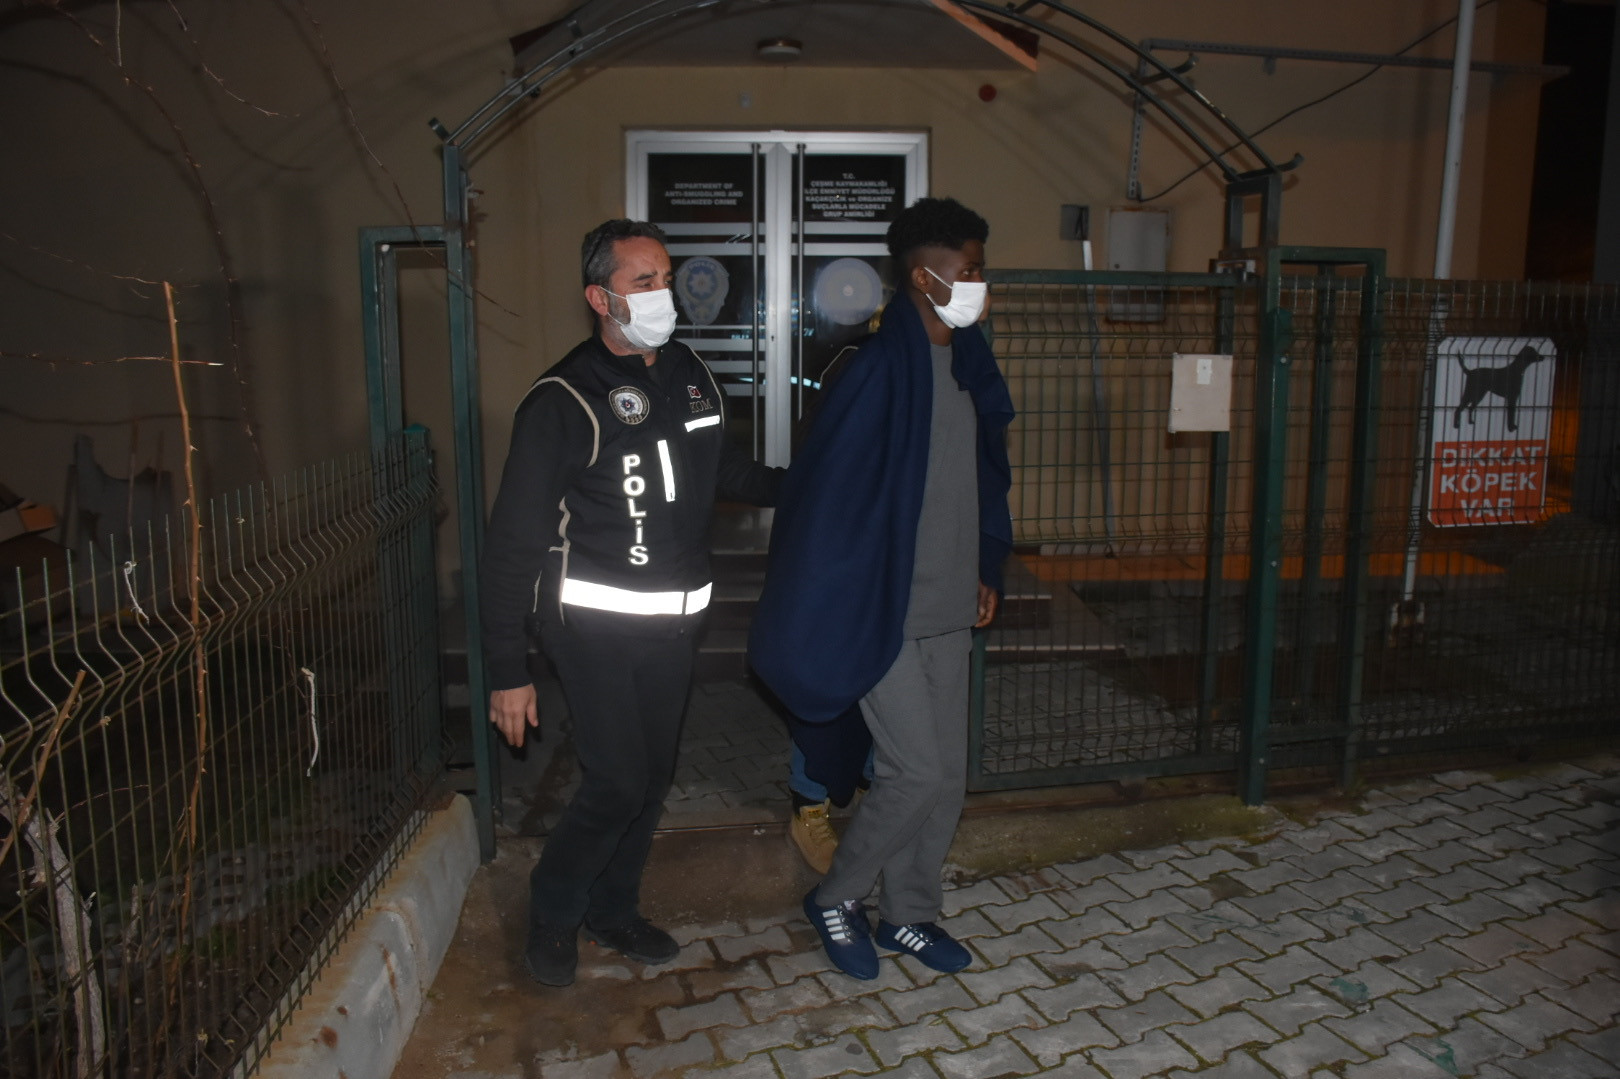 Yunanistan unsurlarınca ölüme terk edilen kaçak göçmen 3 gün sonra bulundu.